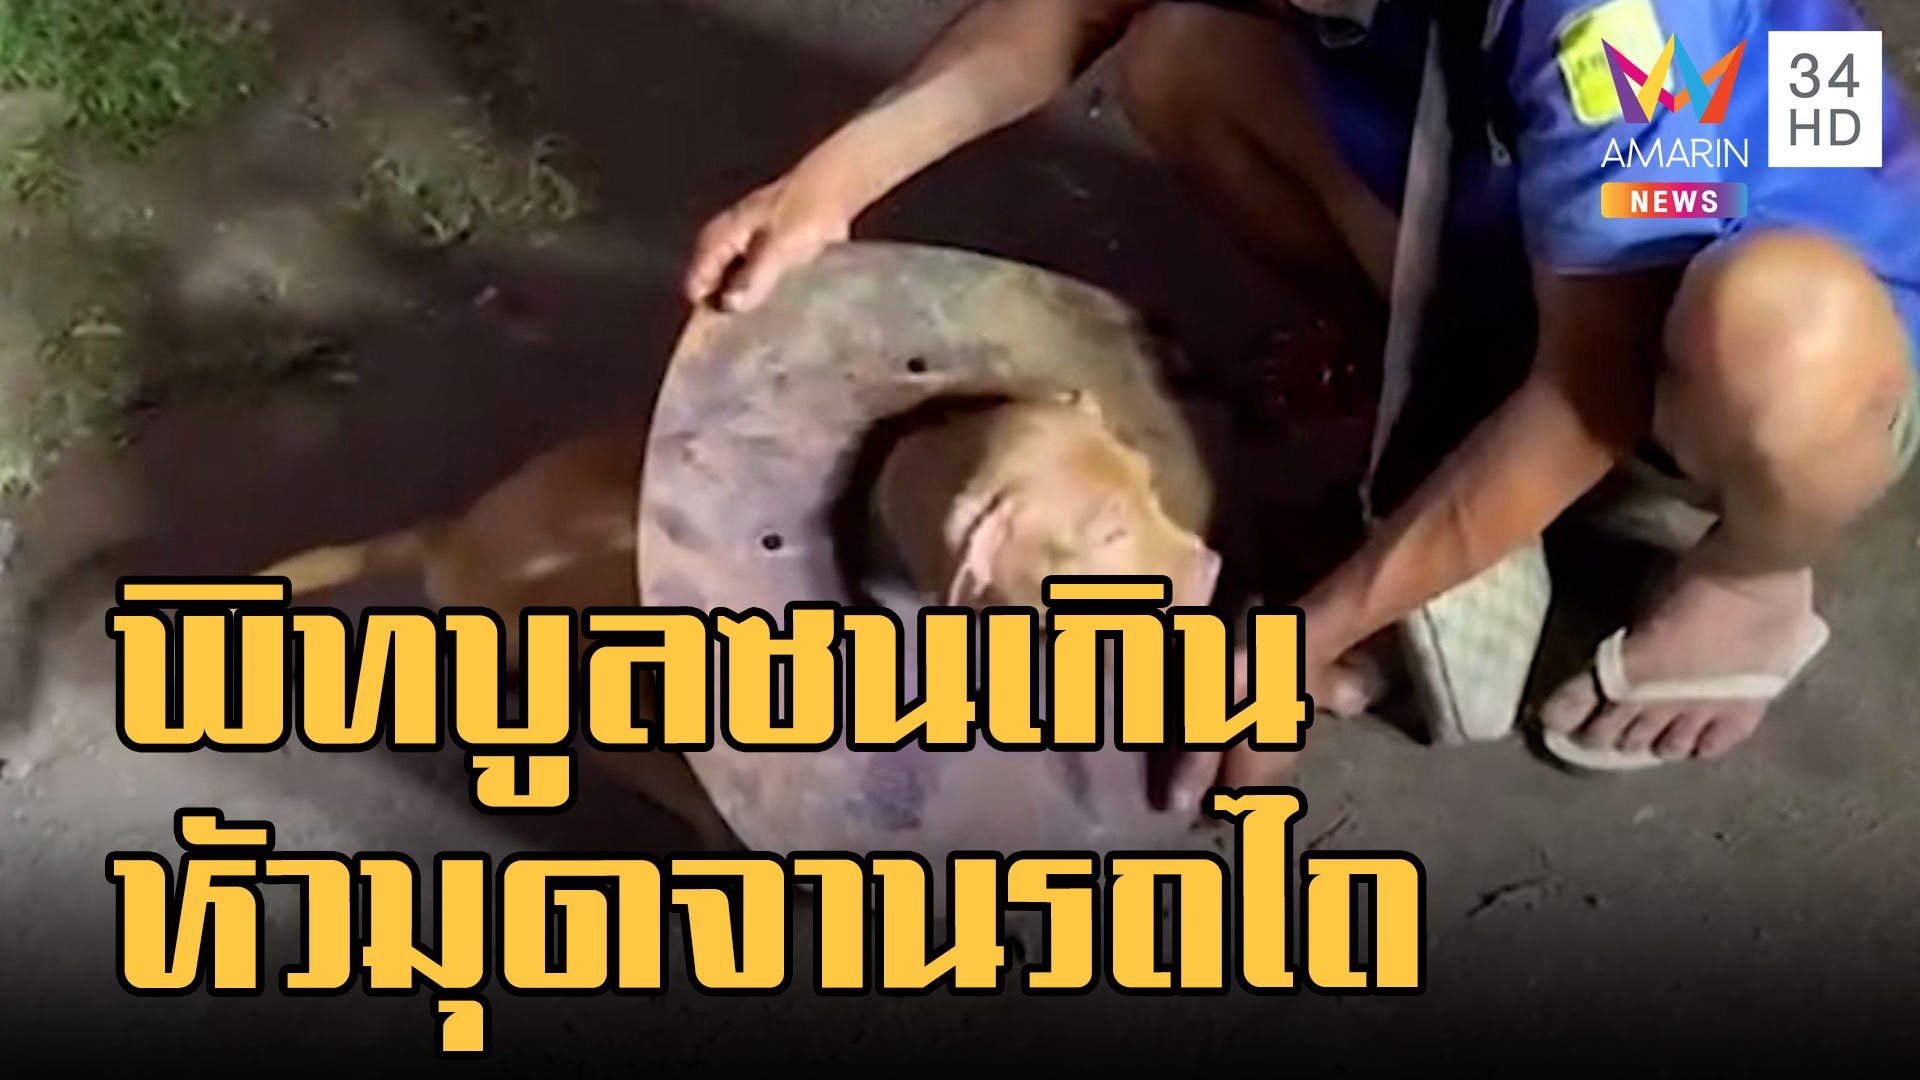 หมาพิทบูลซนมาก หัวโผล่ในจานรถไถเอาออกไม่ได้ | ข่าวอรุณอมรินทร์ | 16 ม.ค. 66 | AMARIN TVHD34